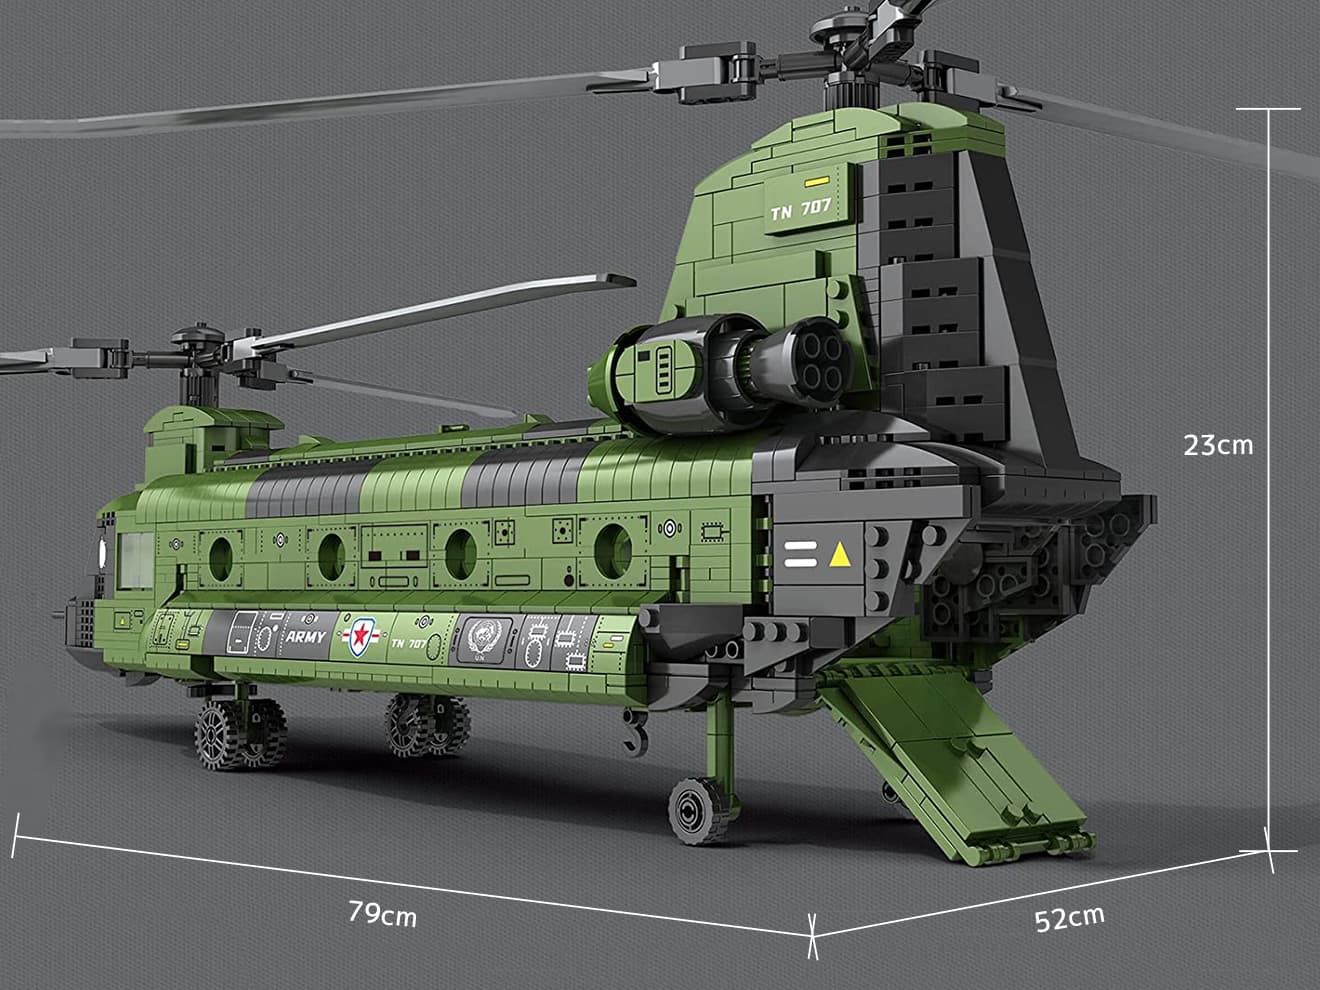 AFM CH-47 チヌーク 輸送ヘリコプター 1622Blocks